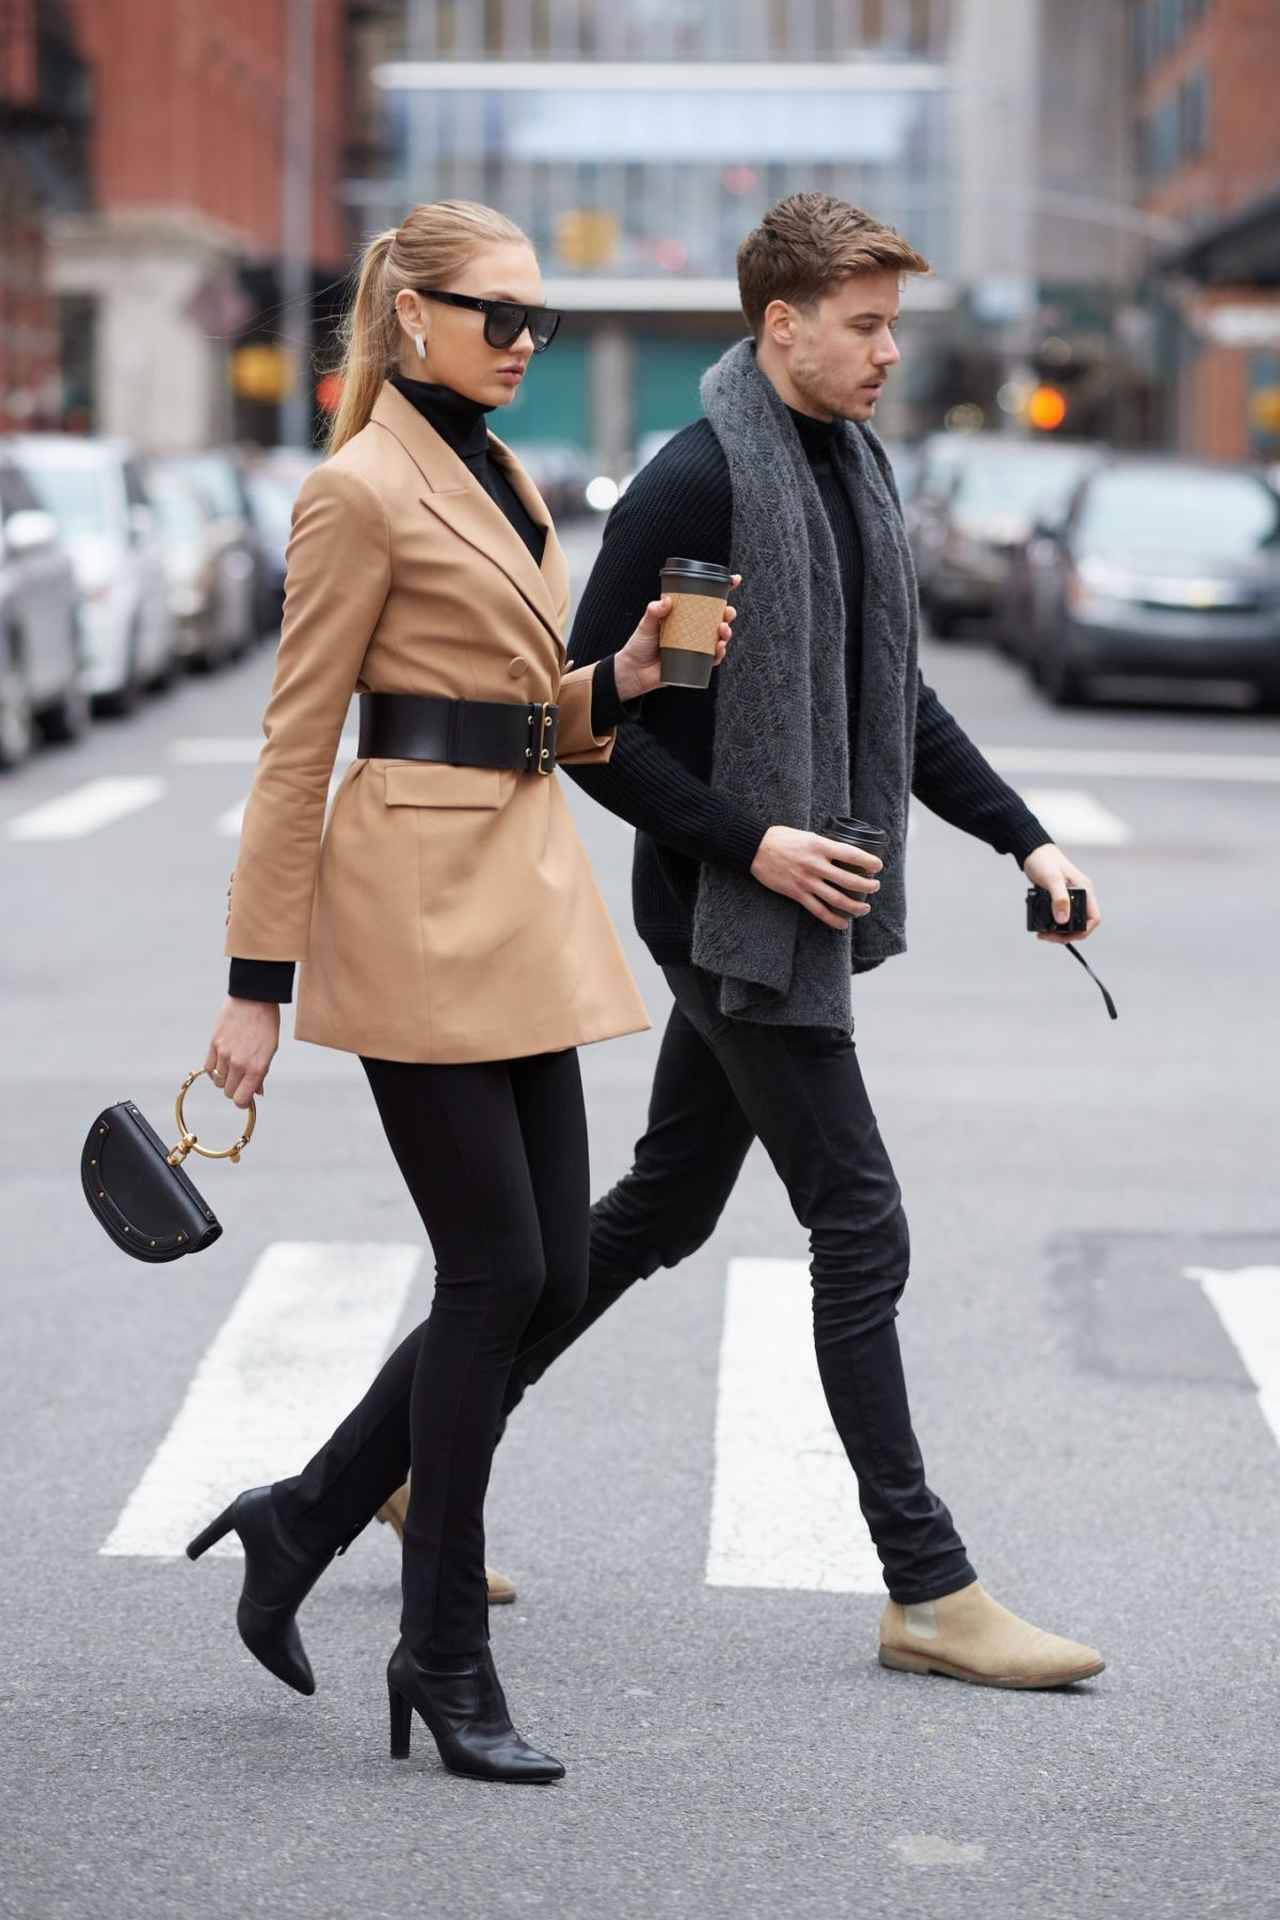 ザラのジャケットで恋人とデート 人気ヴィクシーモデルの私服をチェック 19年3月21日 エキサイトニュース